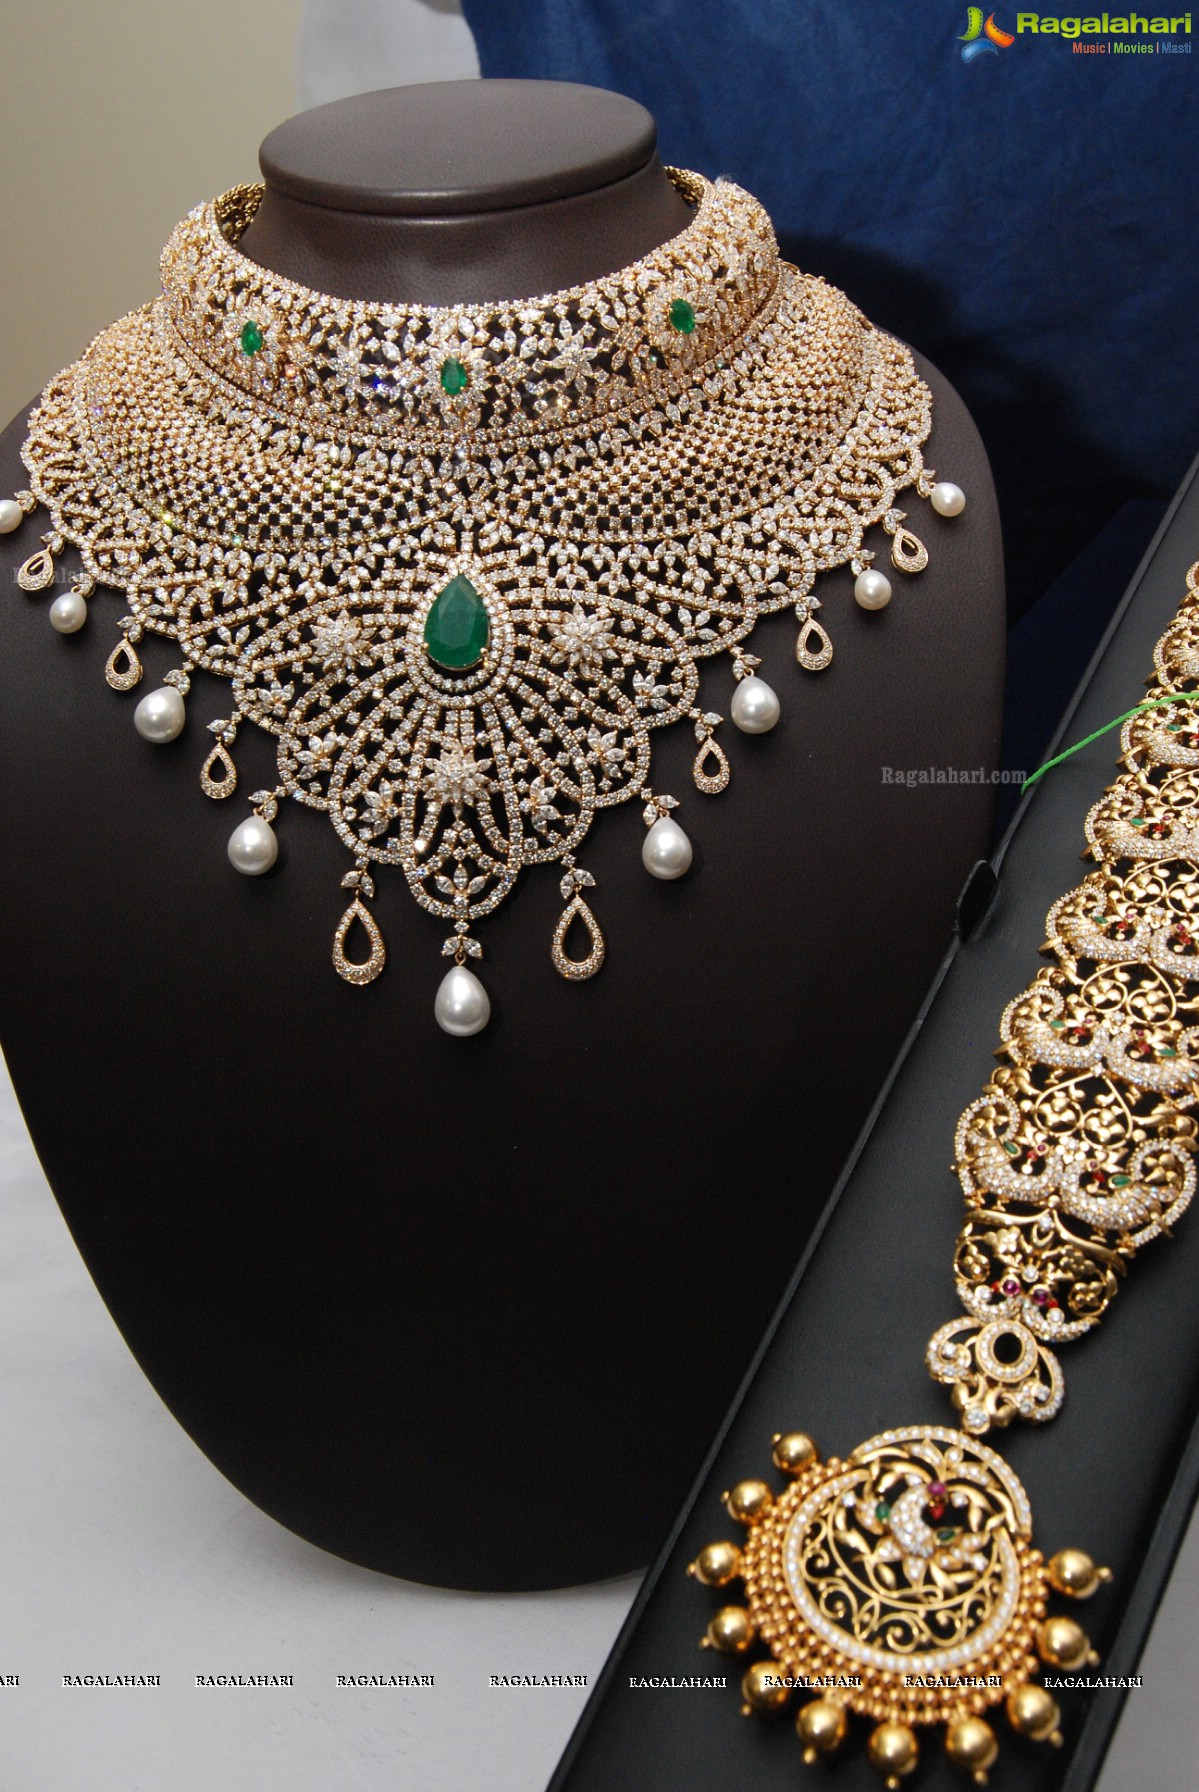 Kirtilals Largest Diamond Necklace Launch